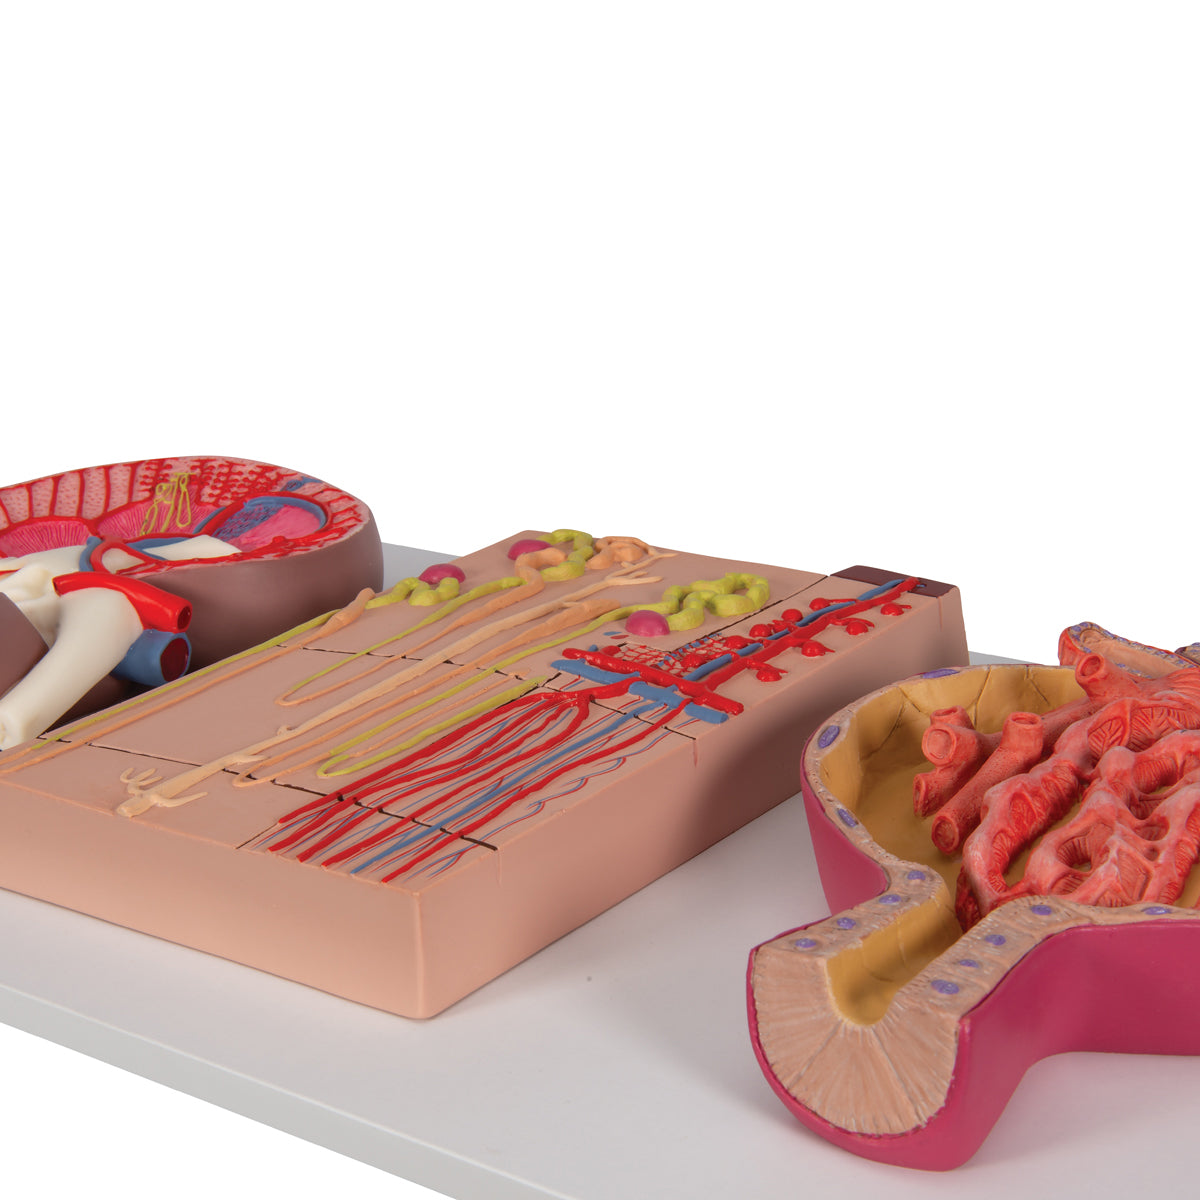 Komplett njurmodell som visar njuren i längdsnitt, nefronet och njurkroppen tillsammans på ett stativ